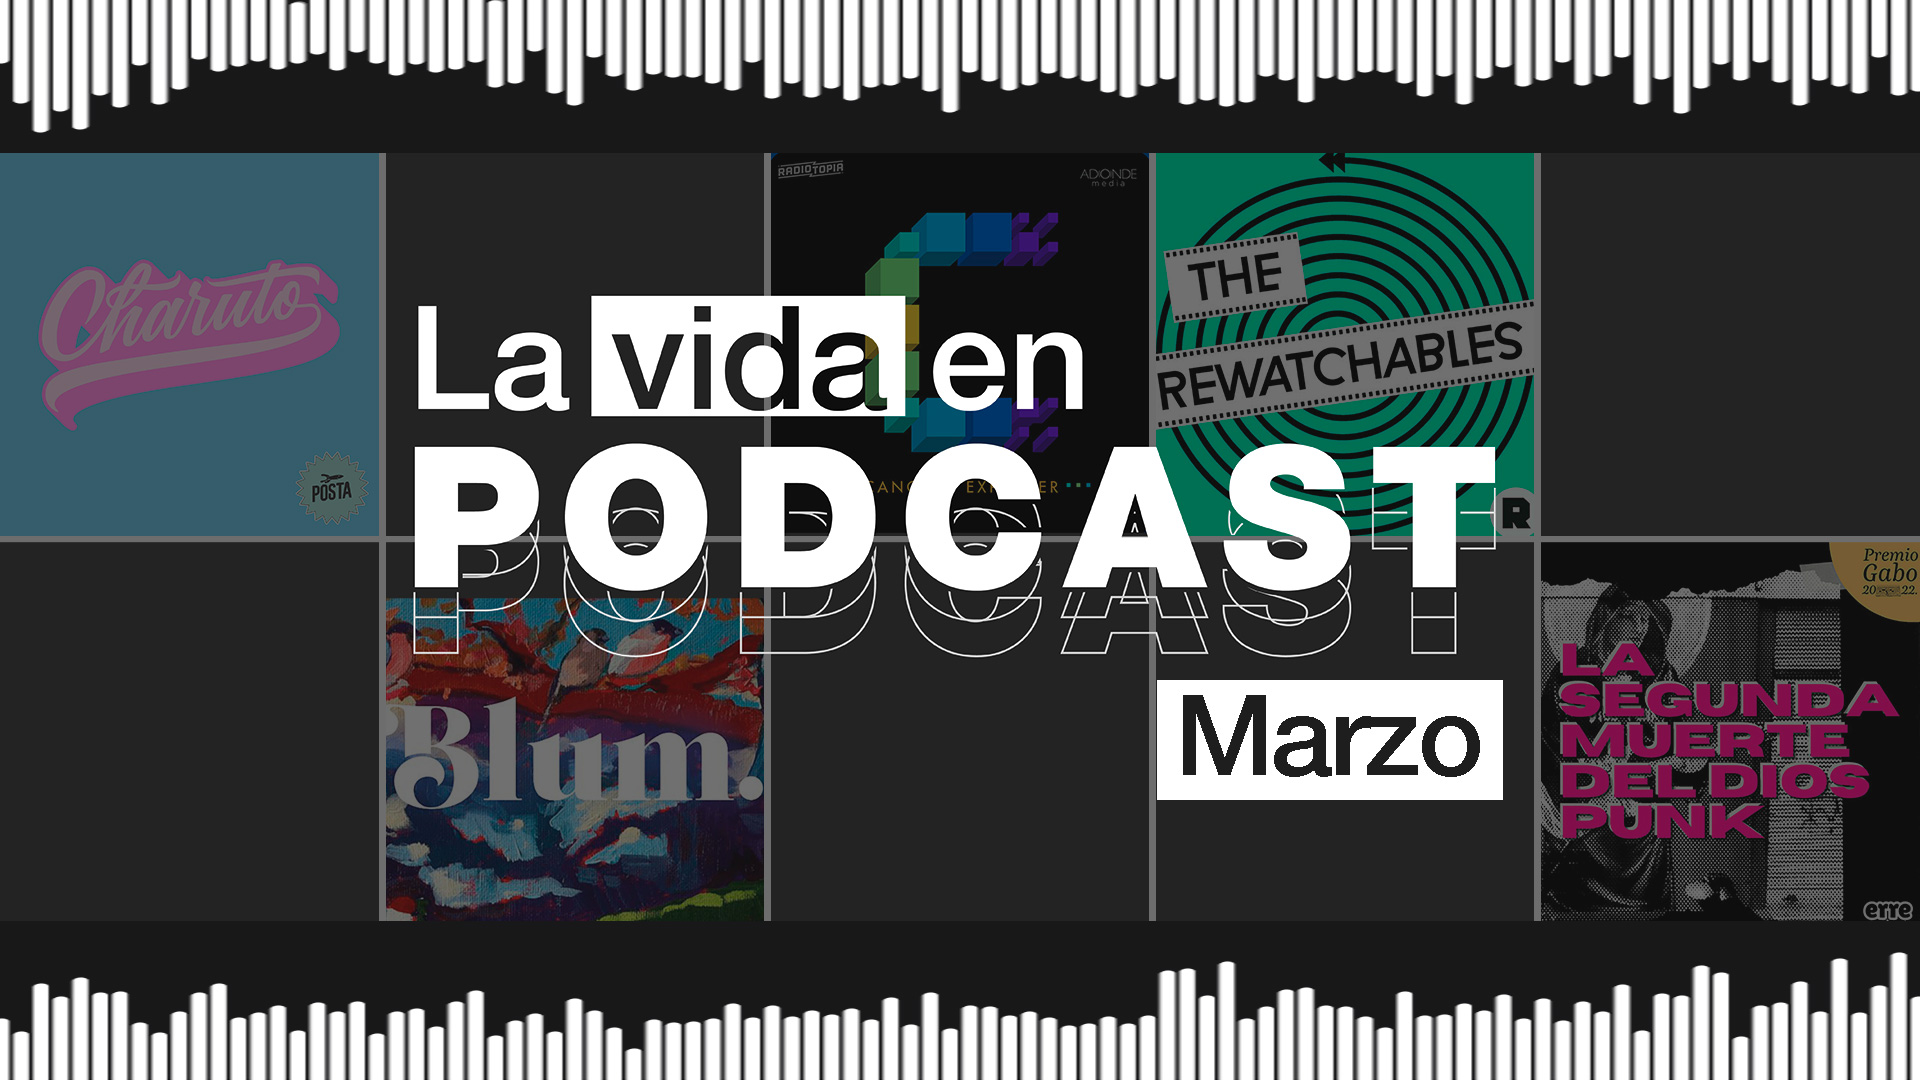 La vida en podcast: los recomendados de marzo